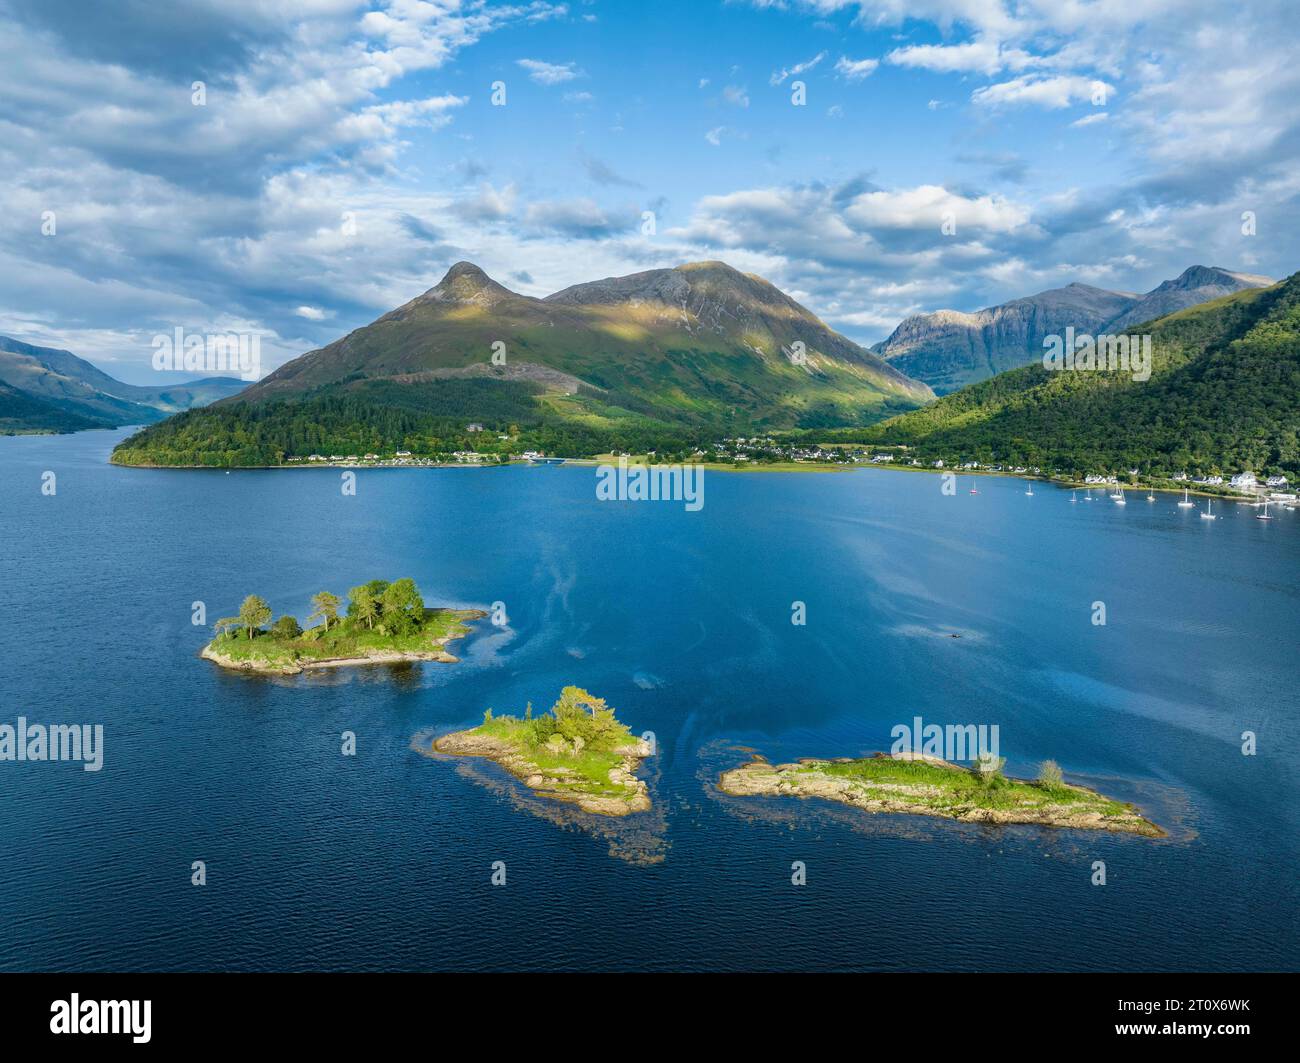 Vista aerea della parte occidentale del lago d'acqua dolce loch Leven con un gruppo di isole, ha lasciato di gran lunga l'isola di discussione ricca di storia, sopra di essa Foto Stock